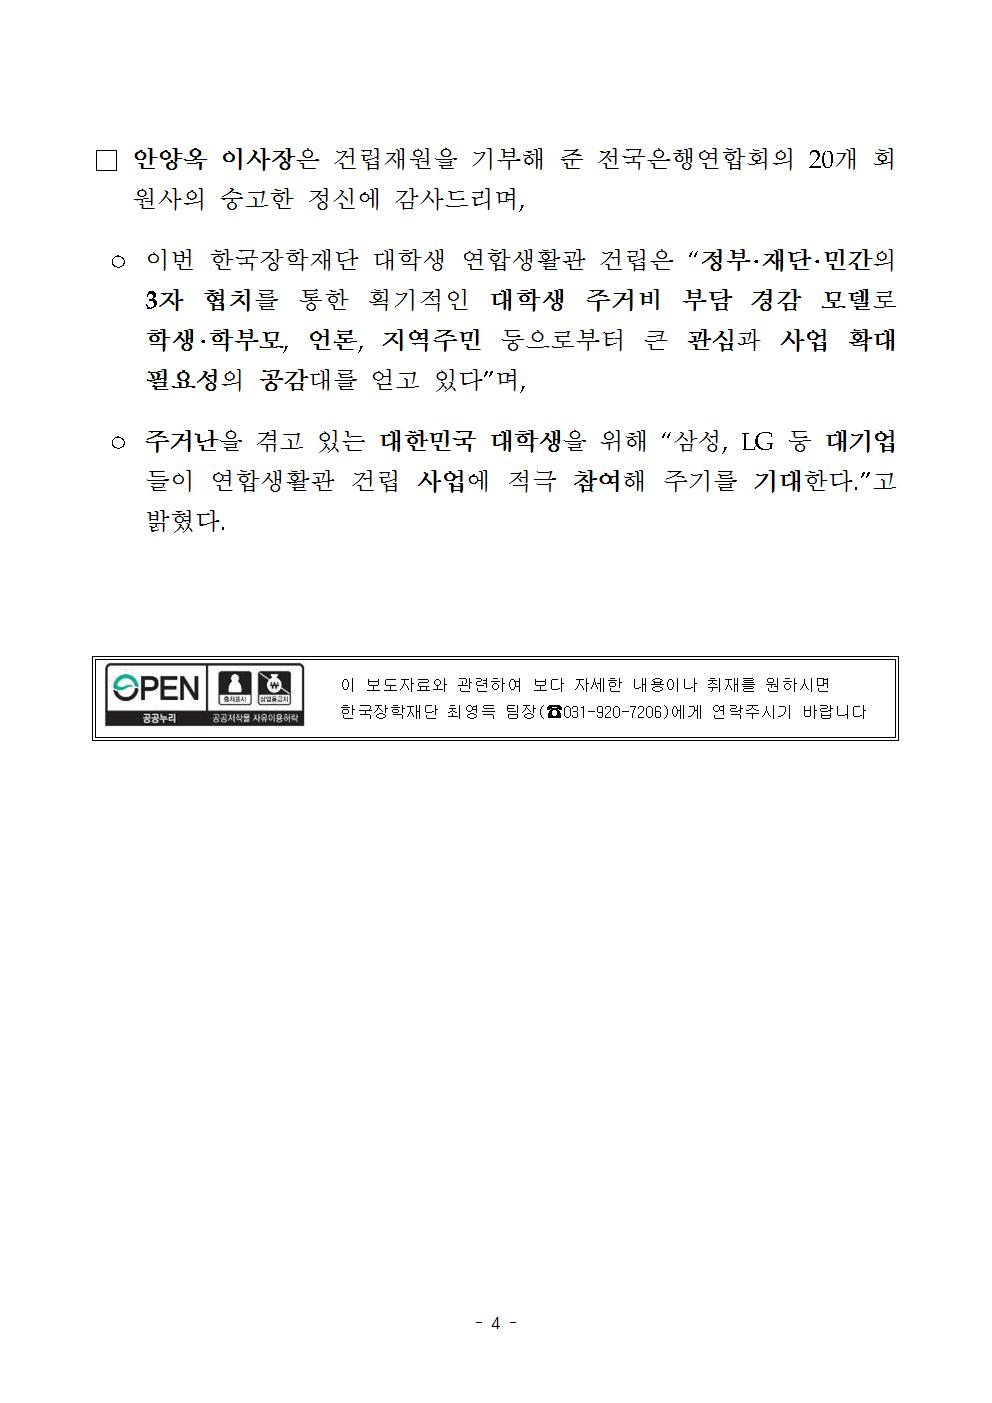 04-06(목)[보도자료] 대학생_연합생활관_개관식_개최_최종004.jpg